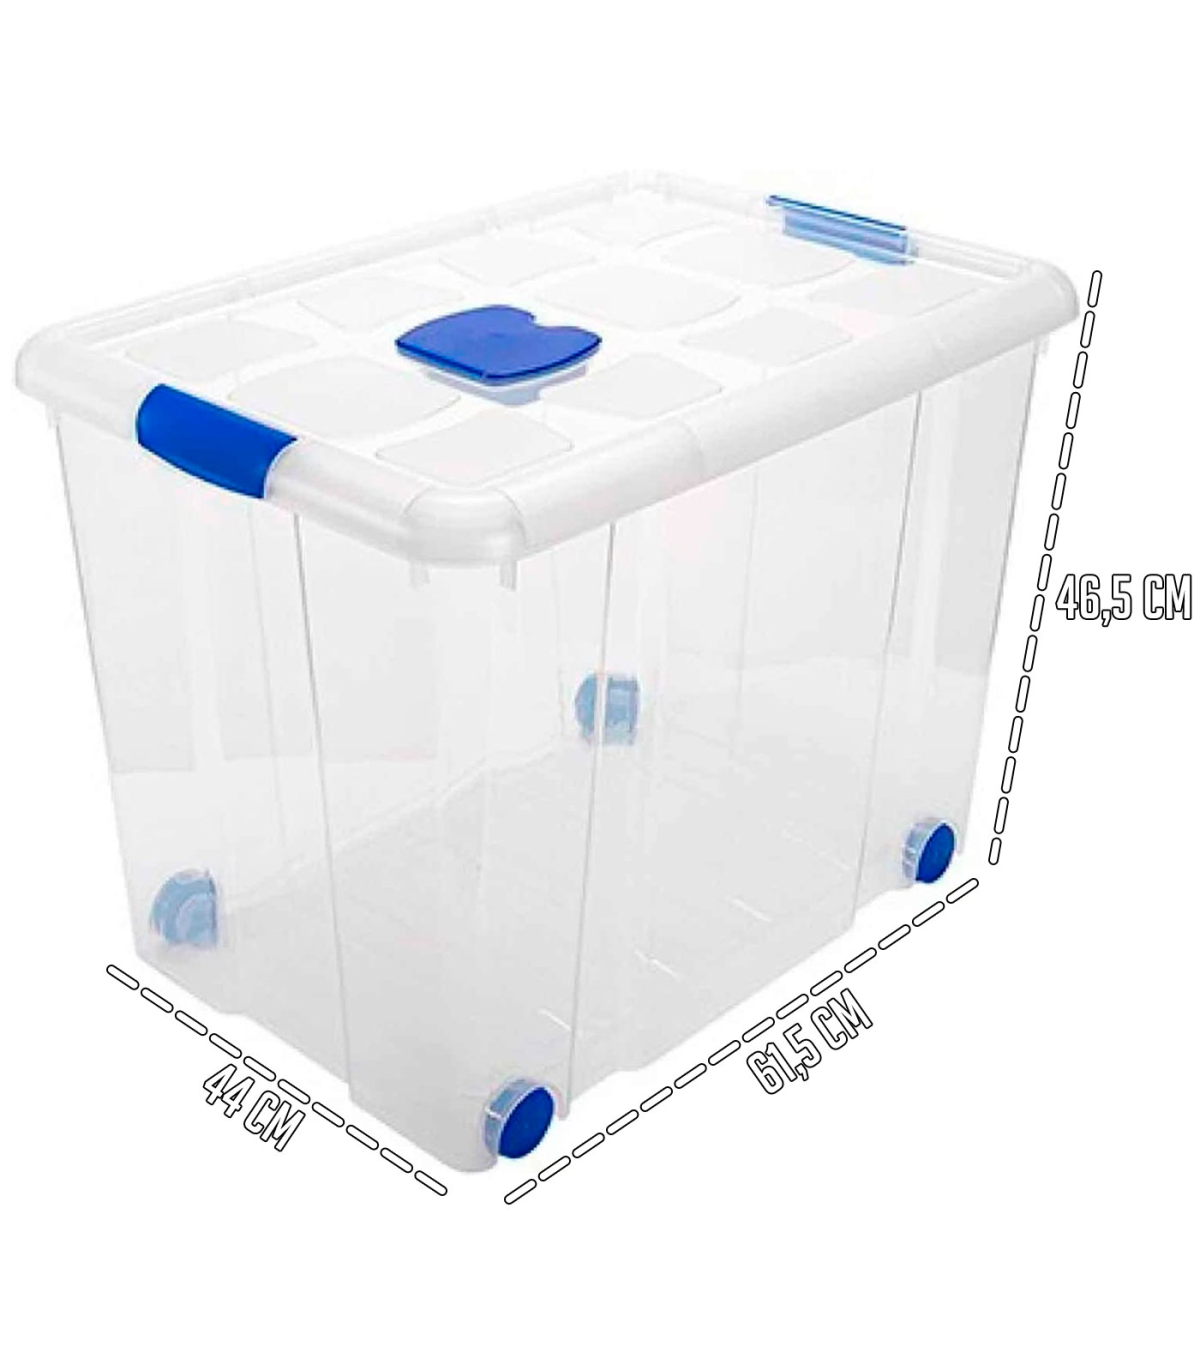 Caja de transparente de almacenamiento tapa y nº 8 con 86 litros de 46.5 x 44 x 61.5 cm